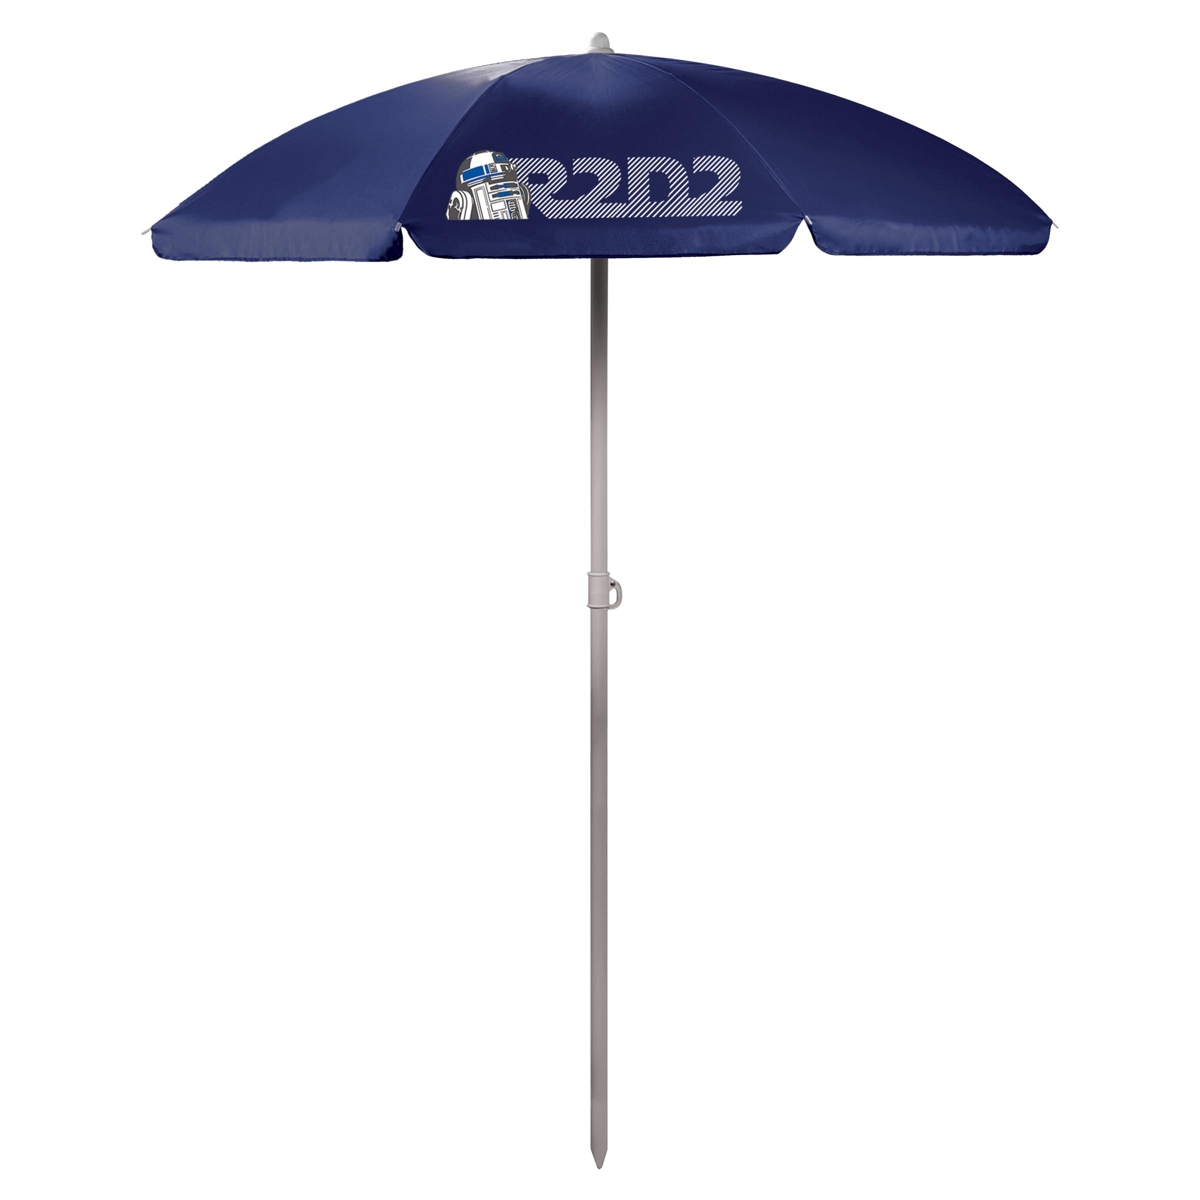 R2D2 Logo Portable Beach Umbrella - Navy